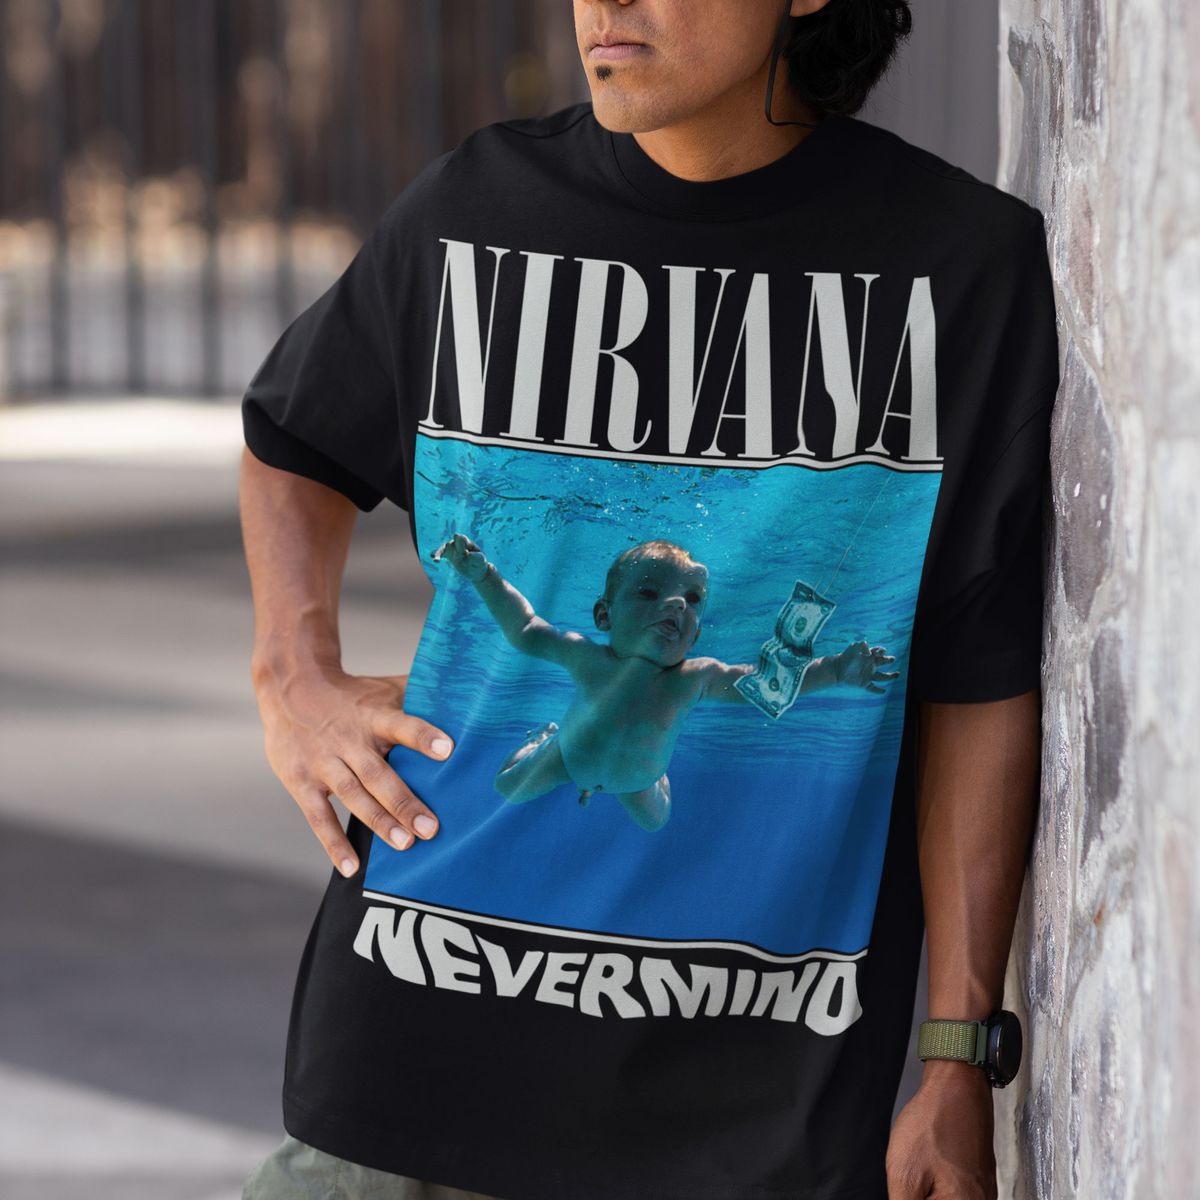 Nome do produto: Camisa Nirvana Nevermind